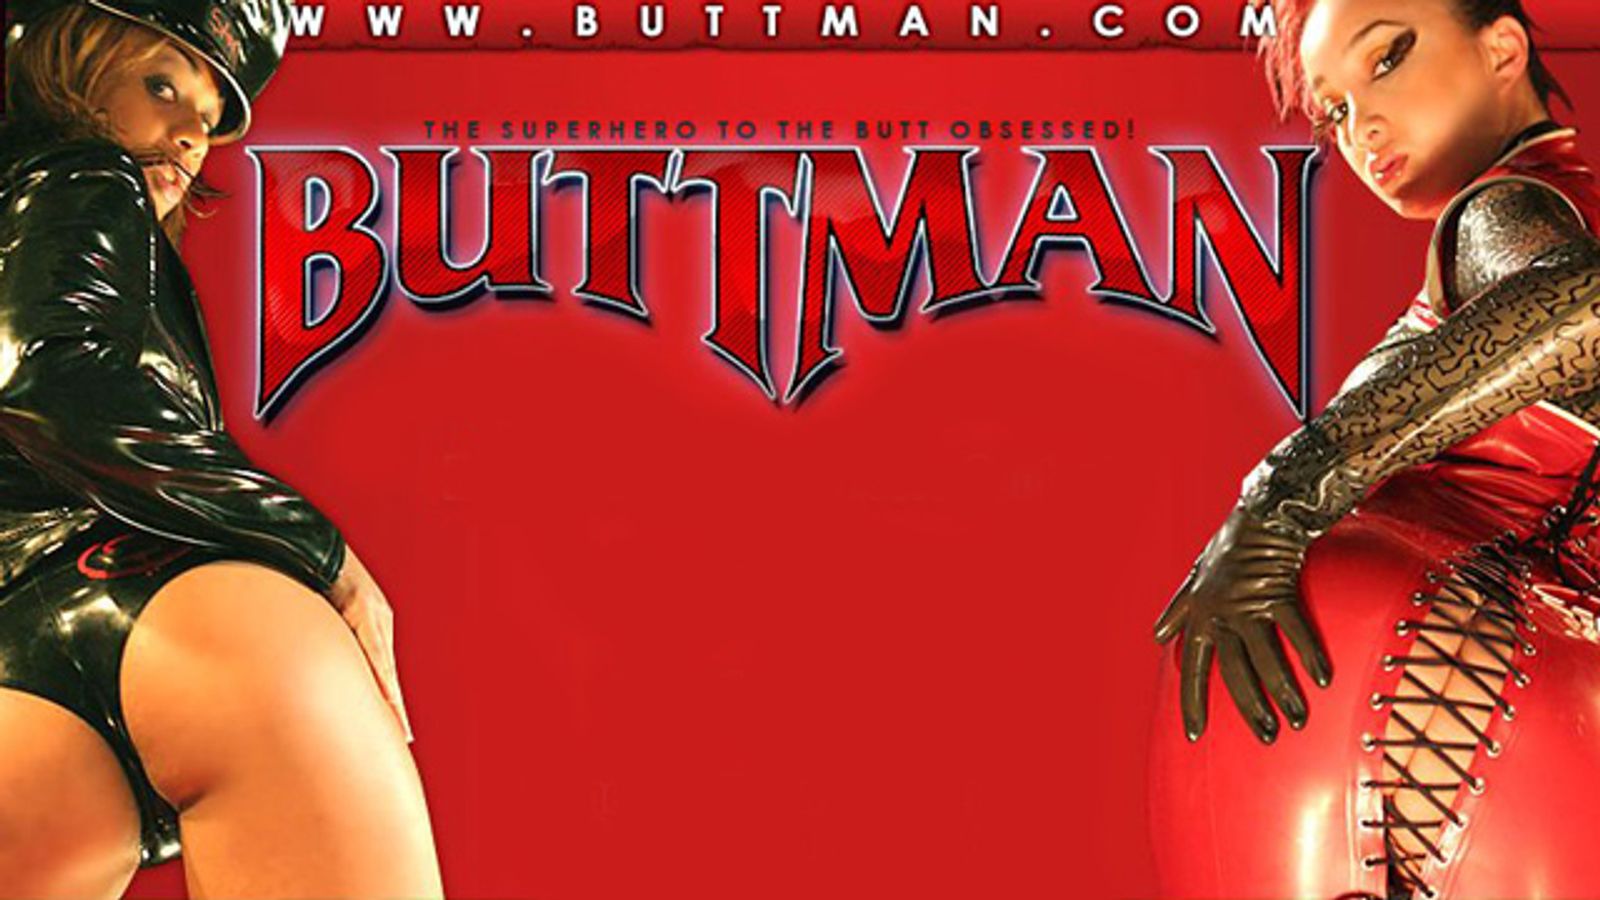 Stagliano Relaunches Buttman Website